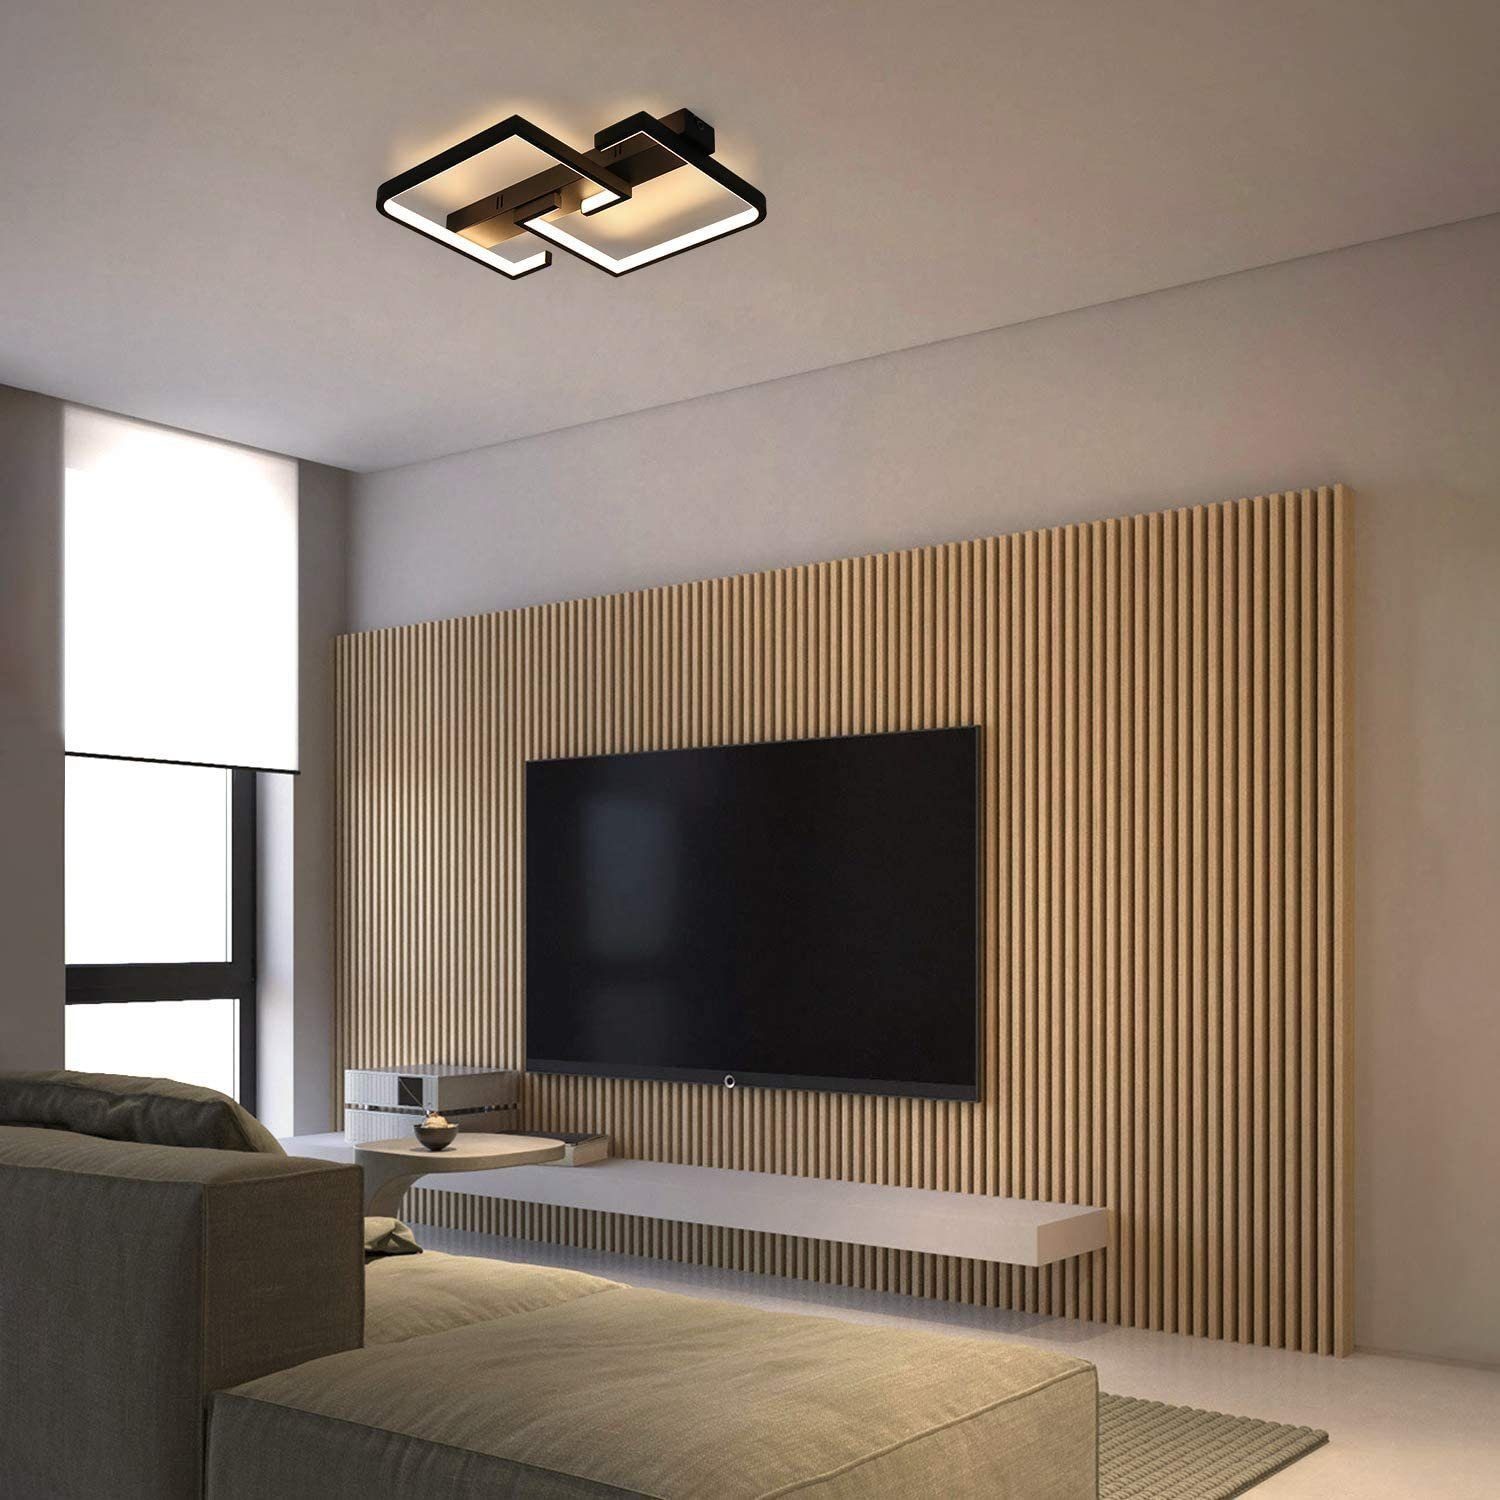 Büro Schwarz fest mit Fernbedienung Deckenleuchte Warmweiß, Kaltweiß, Neutralweiß, integriert, Flur Wohnzimmer Deckenlampe für Nettlife LED Schlafzimmer Dimmbar Esstisch 35W, LED